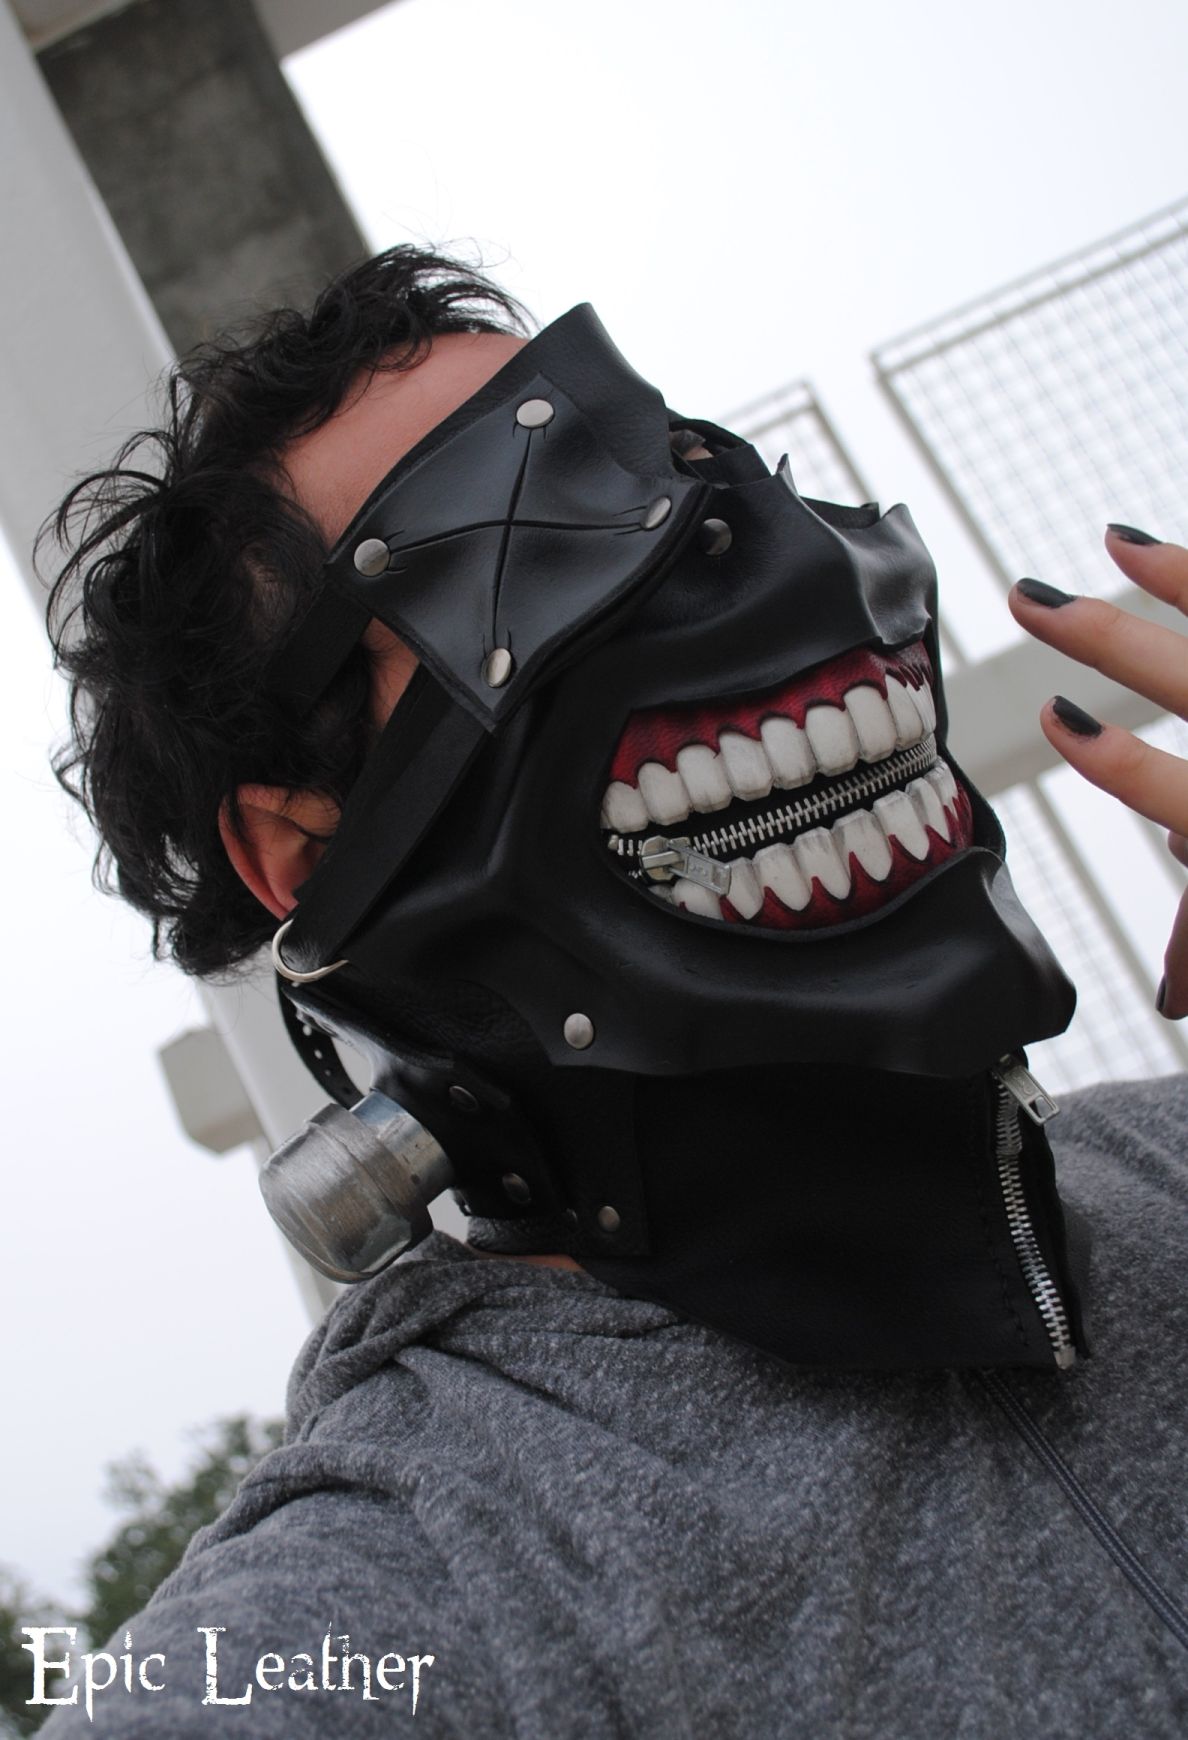 7 Leather mask ideas  leather mask, leather, mask